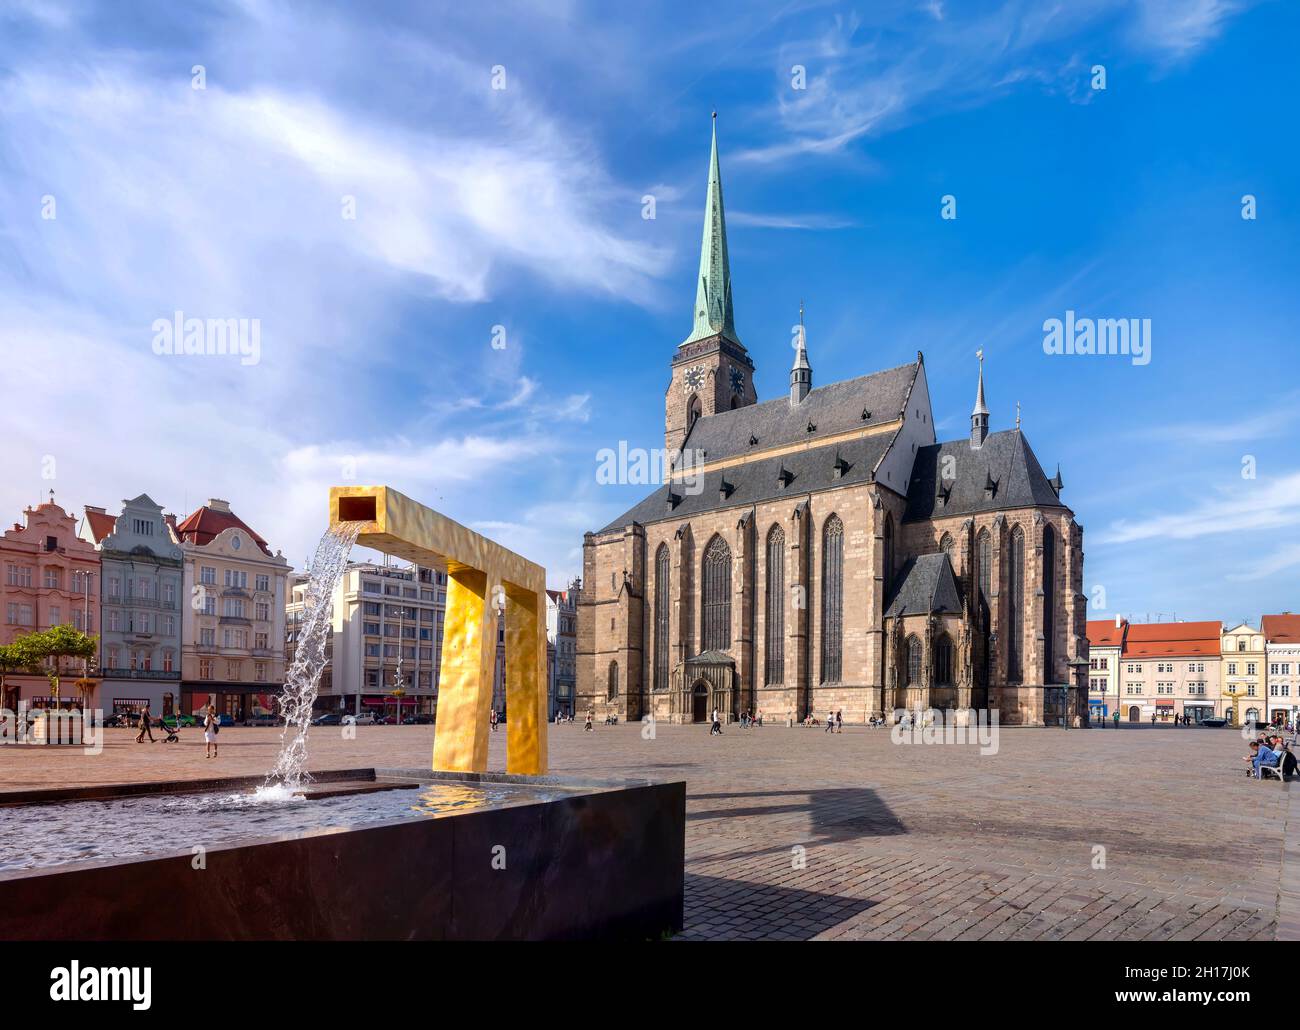 Place du marché à Pilsen avec cathédrale et fontaine, république tchèque.Altstadt von Pilsen, Tschechien Banque D'Images